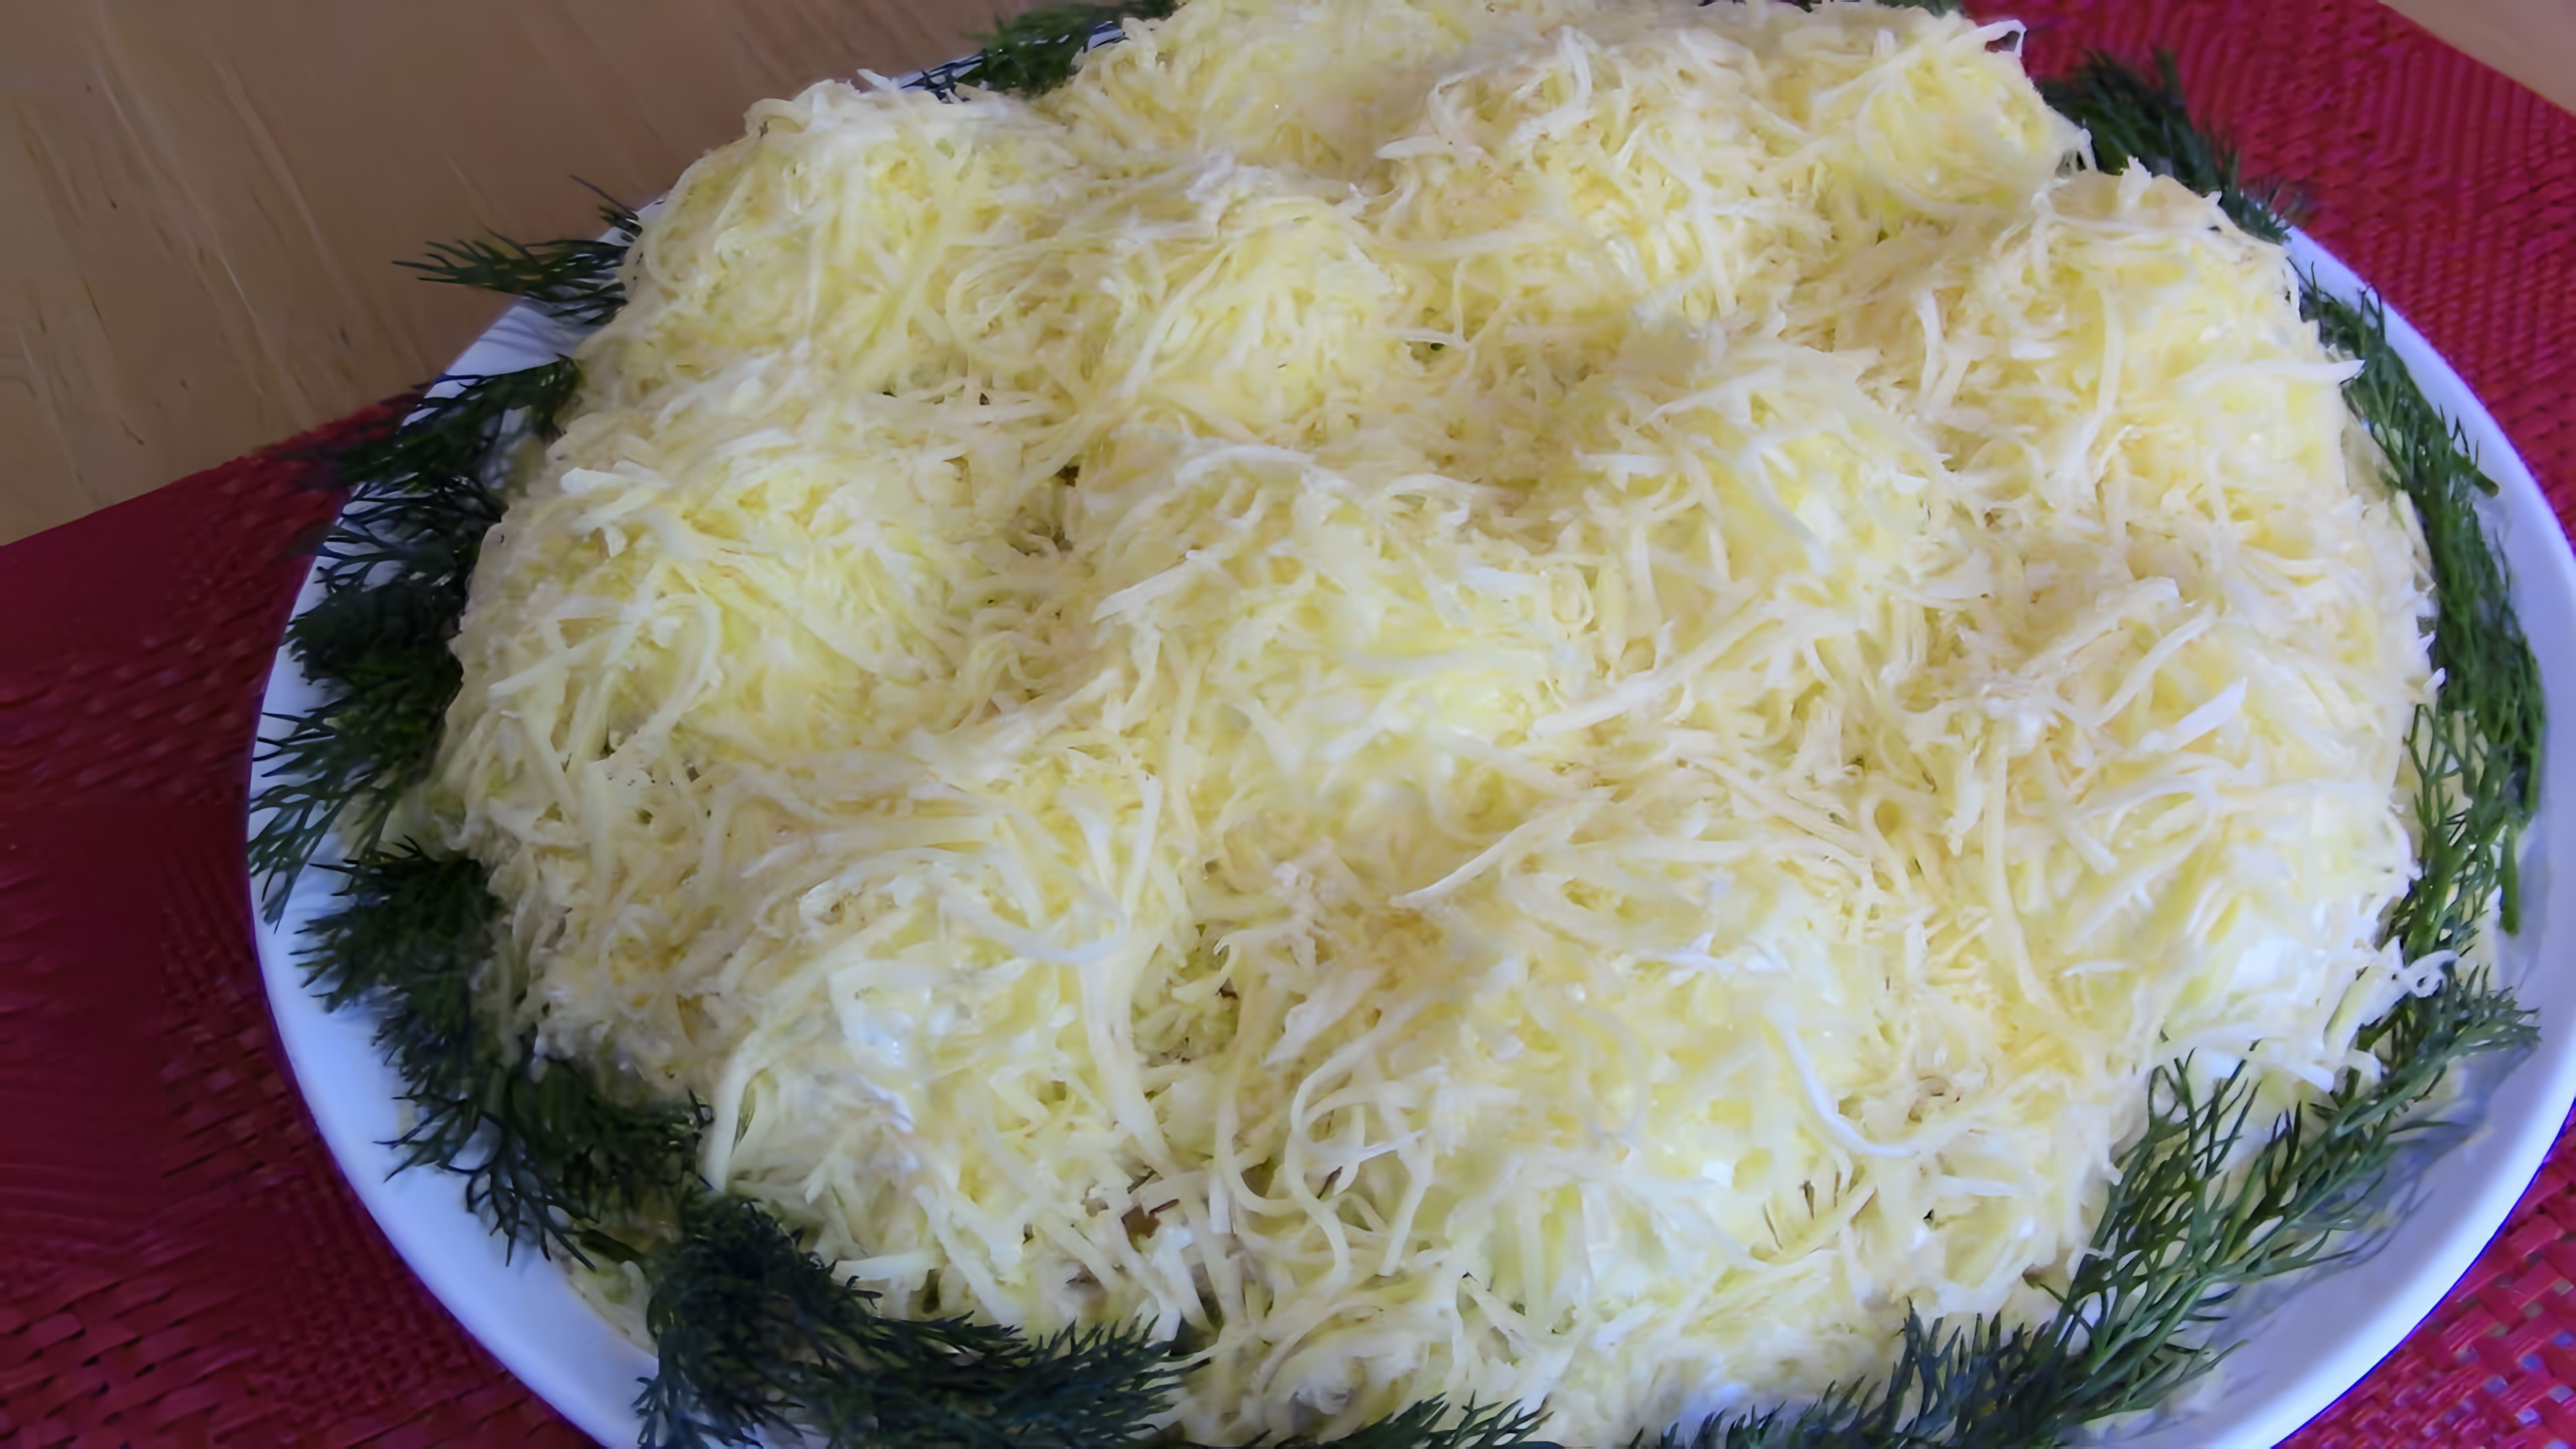 В этом видео демонстрируется процесс приготовления салата "Сугробы" или "Raffaello"